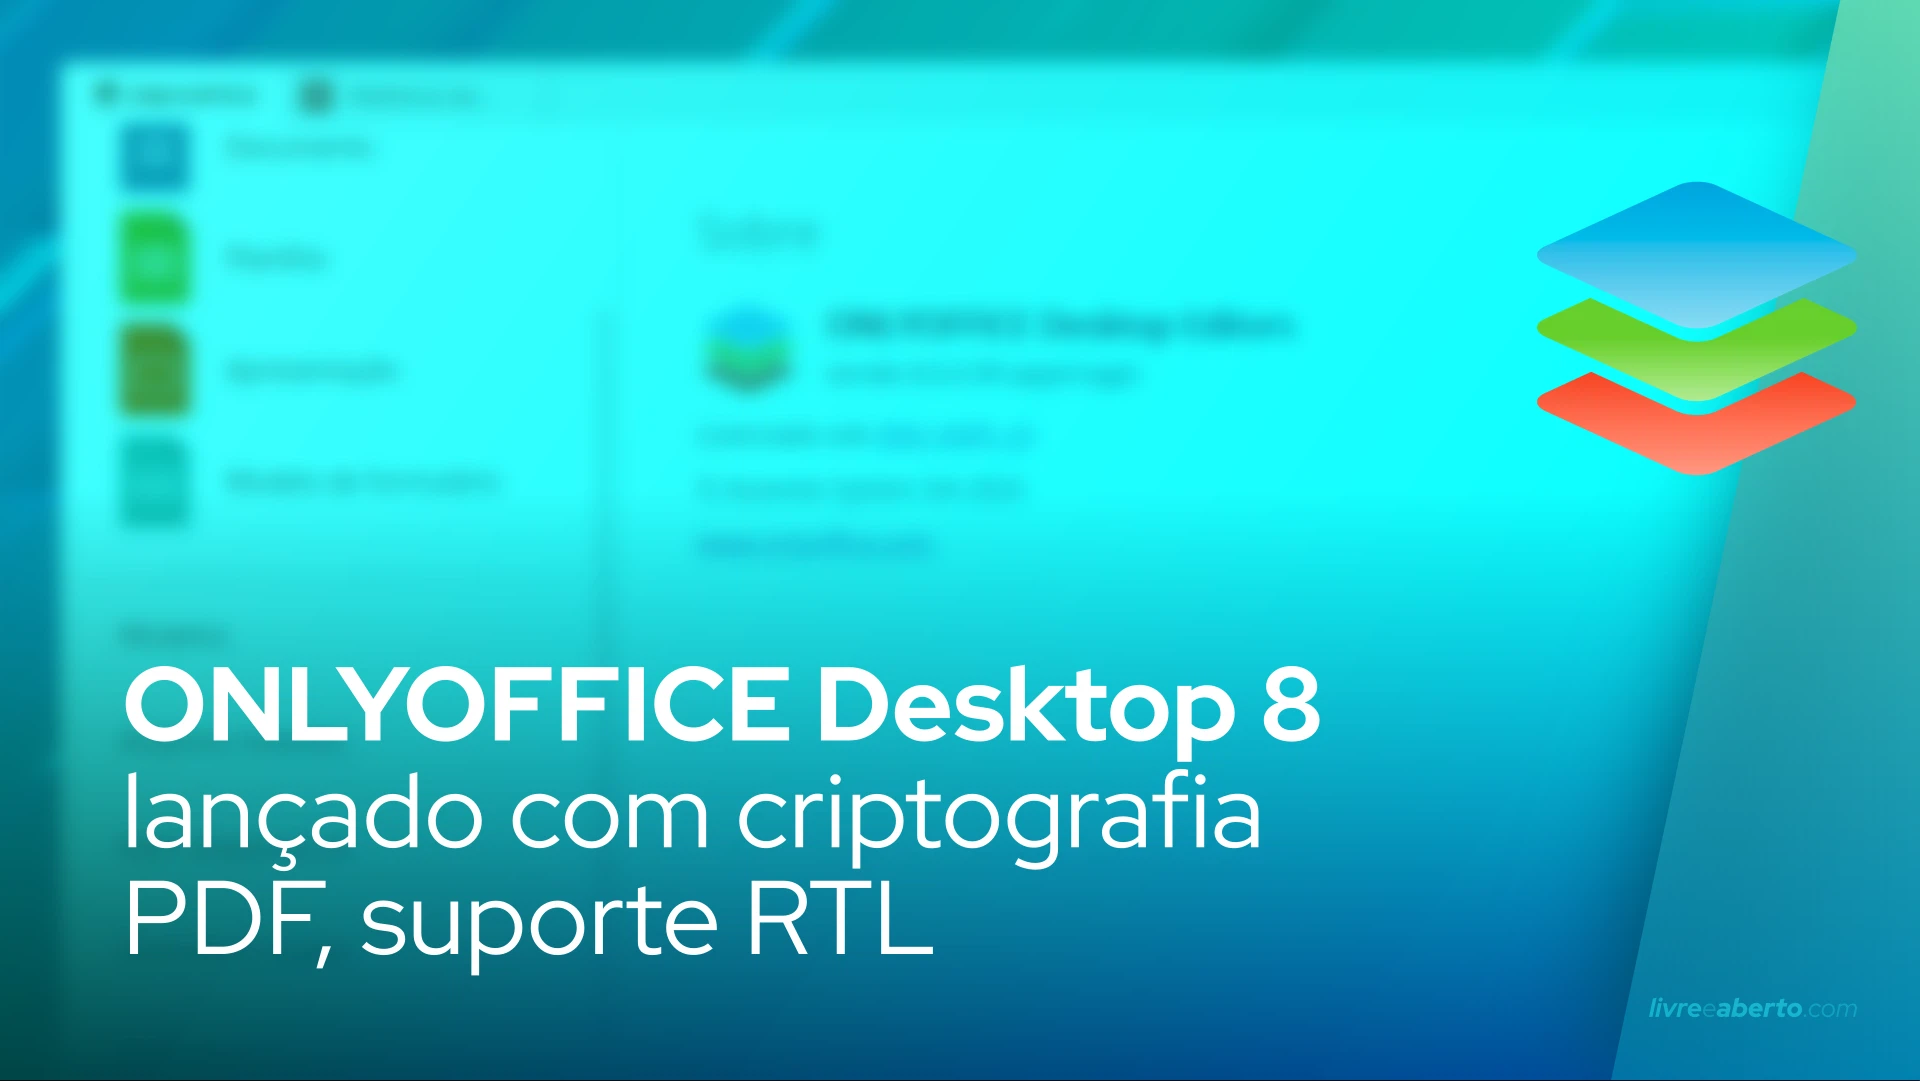 ONLYOFFICE Desktop 8 lançado com criptografia PDF, suporte RTL